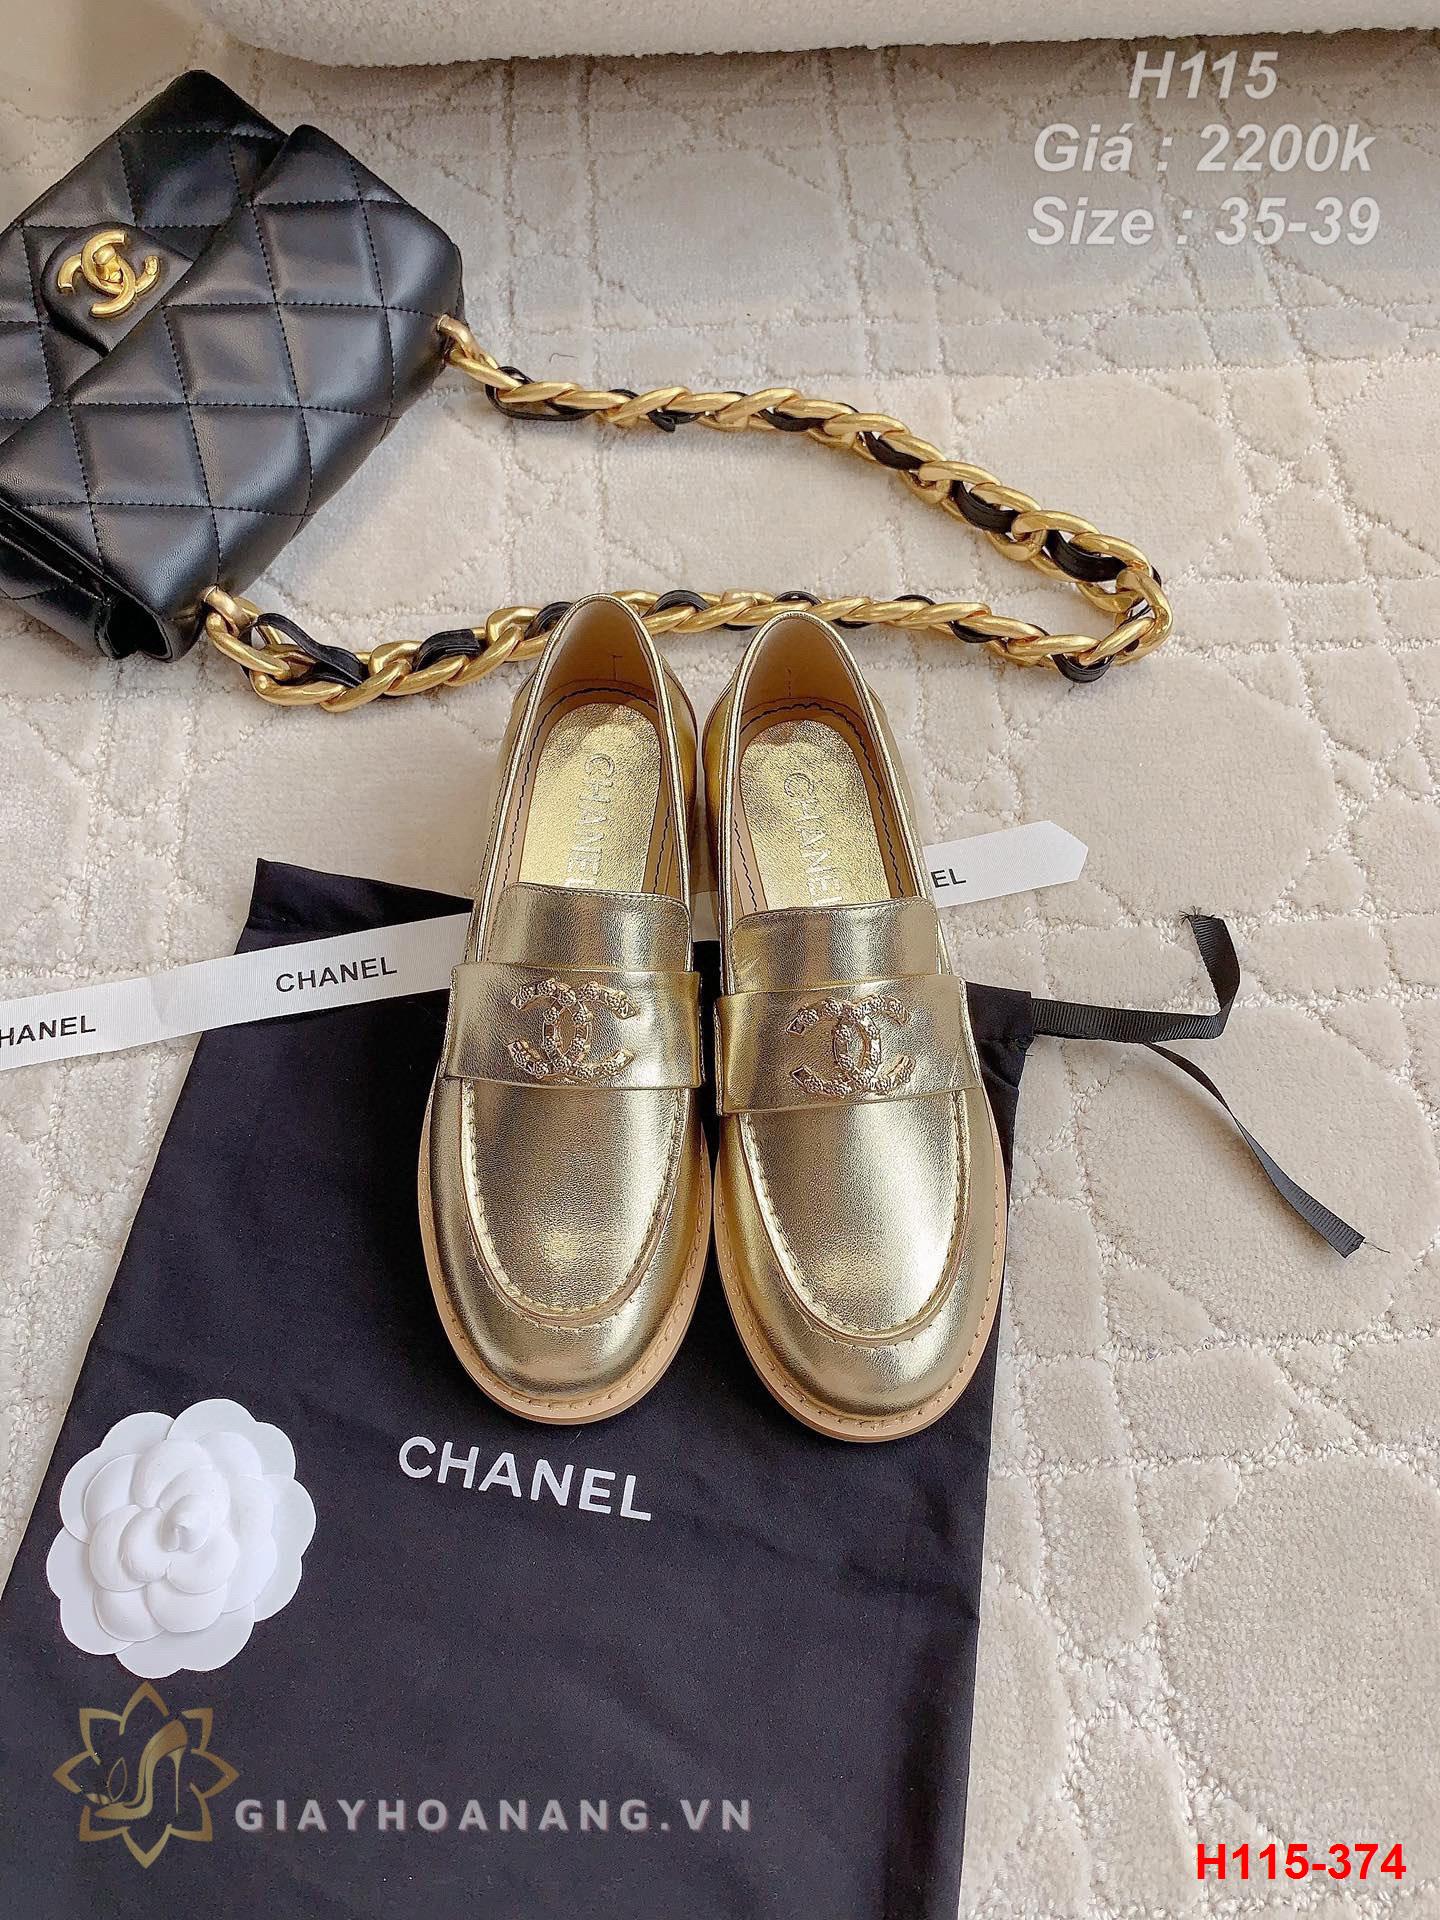 H115-374 Chanel giày lười siêu cấp